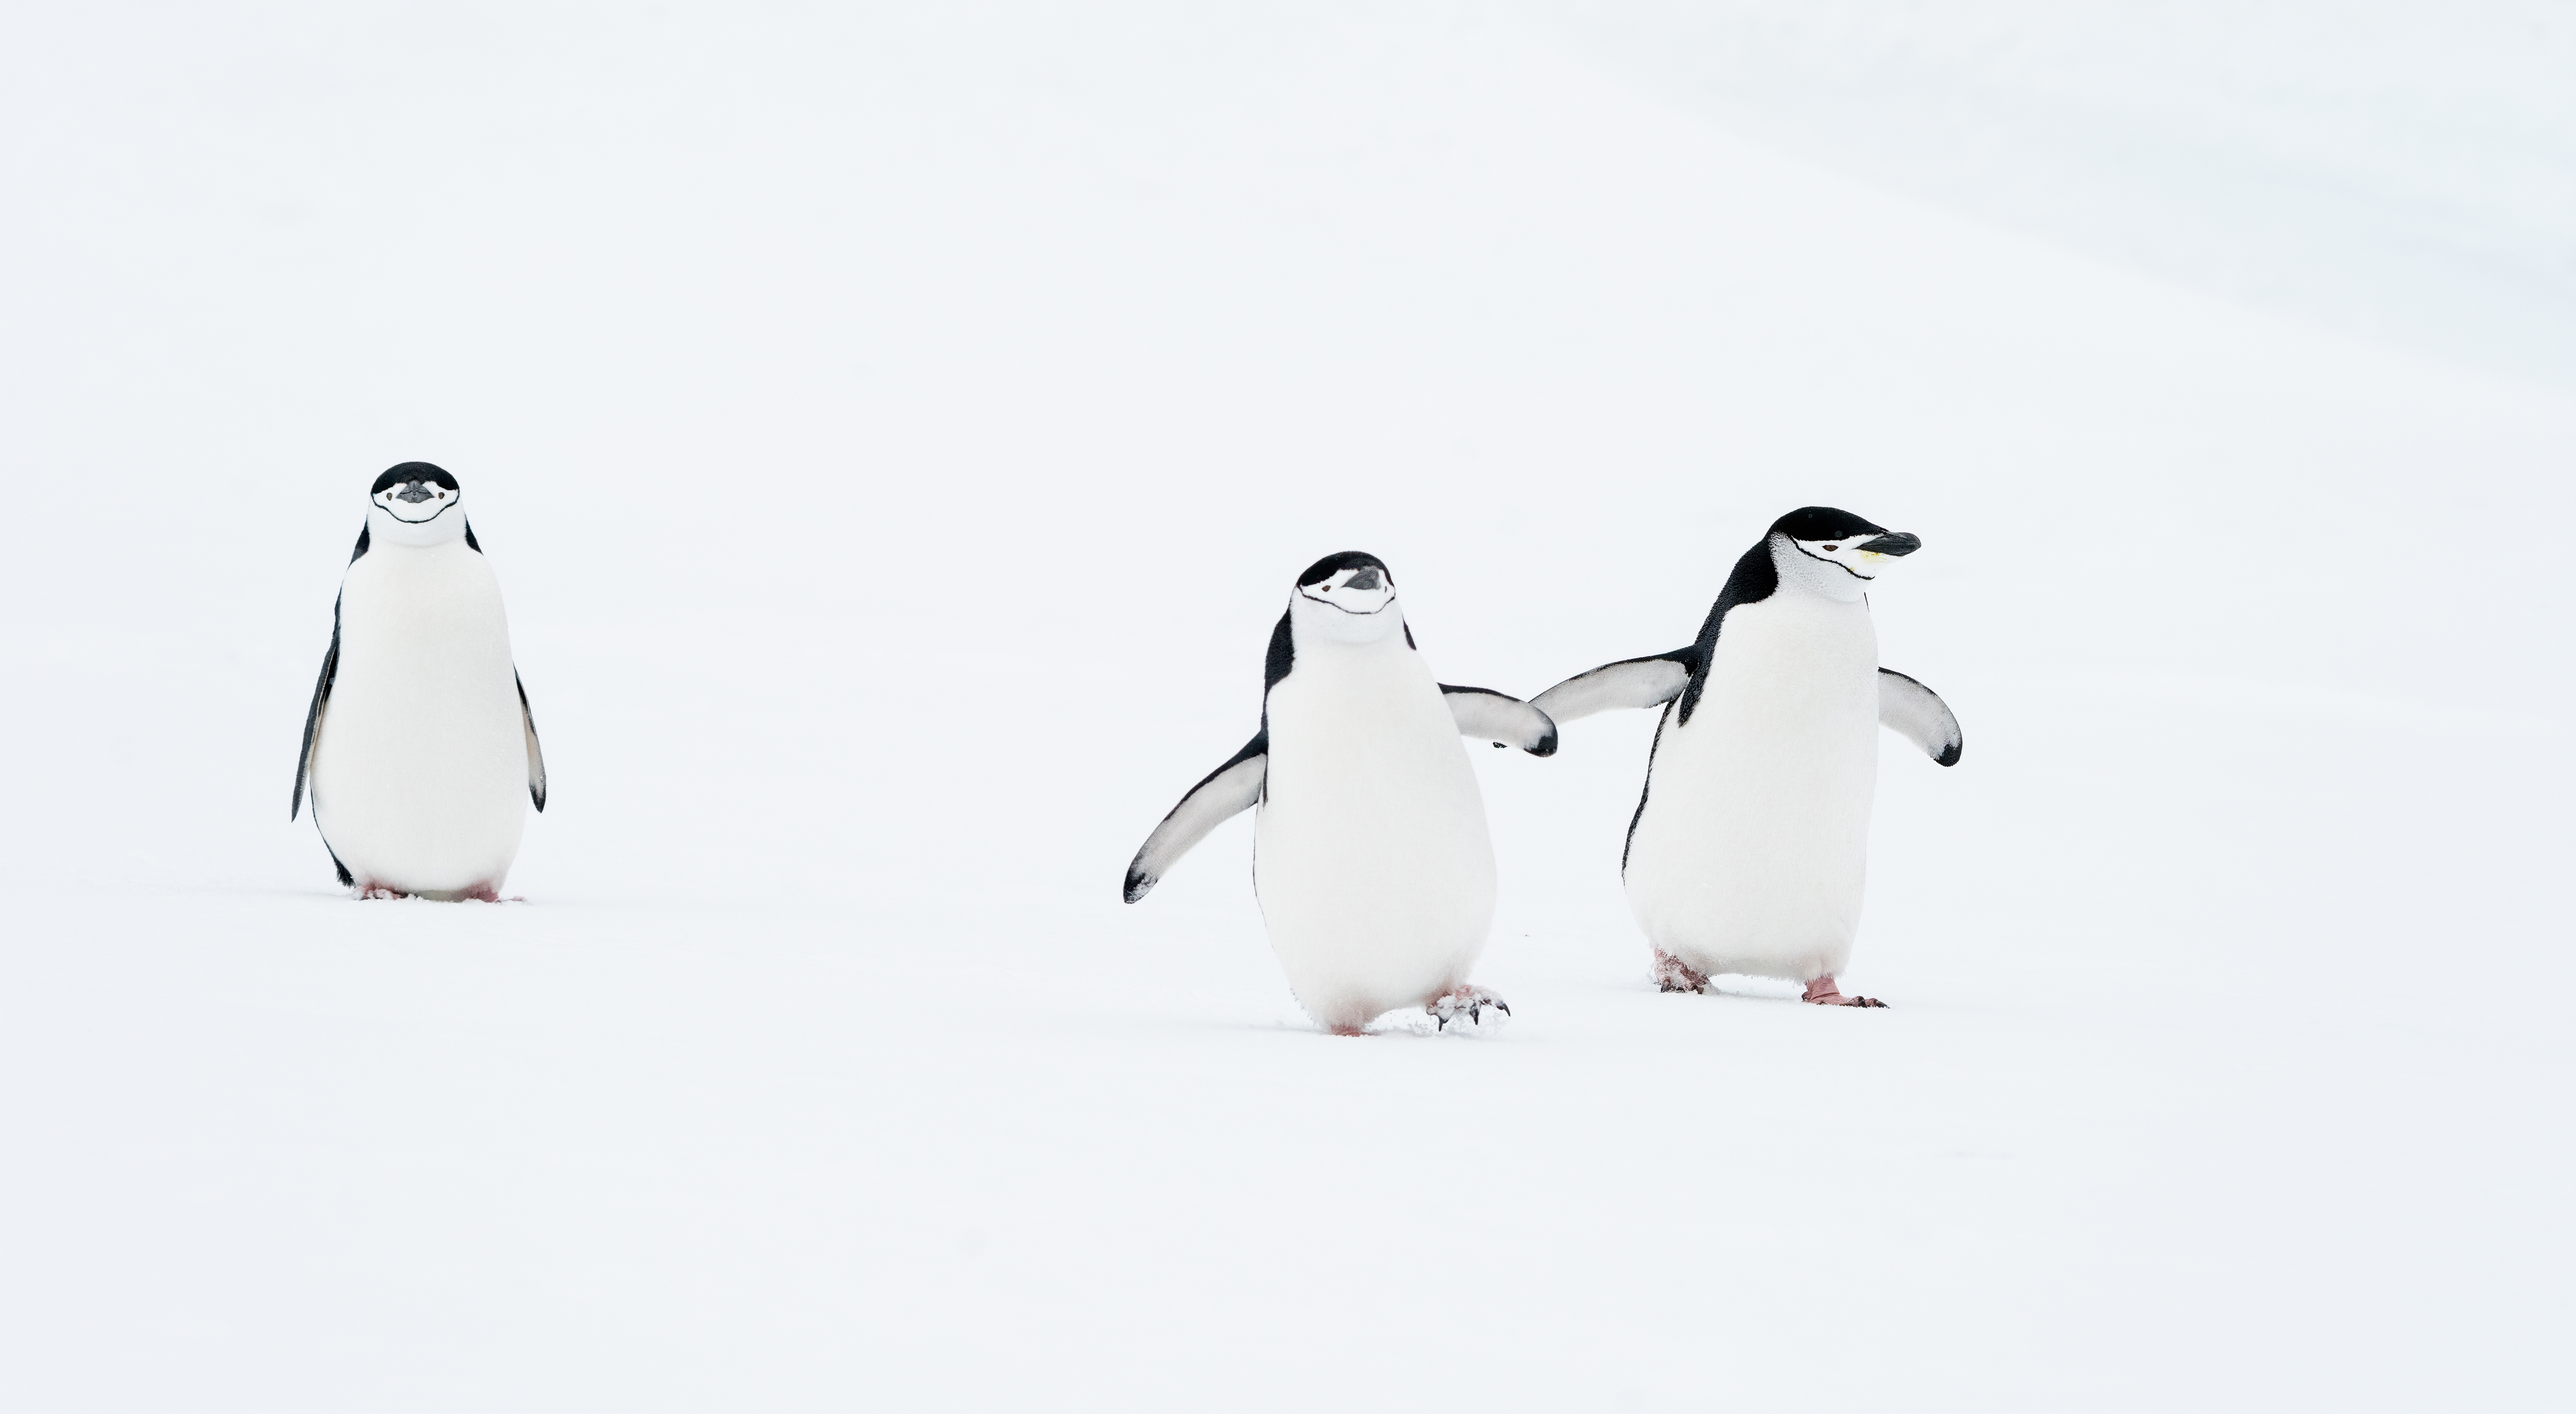 Dois pinguins são fotografados juntos, deixando para trás um pinguim solitário.